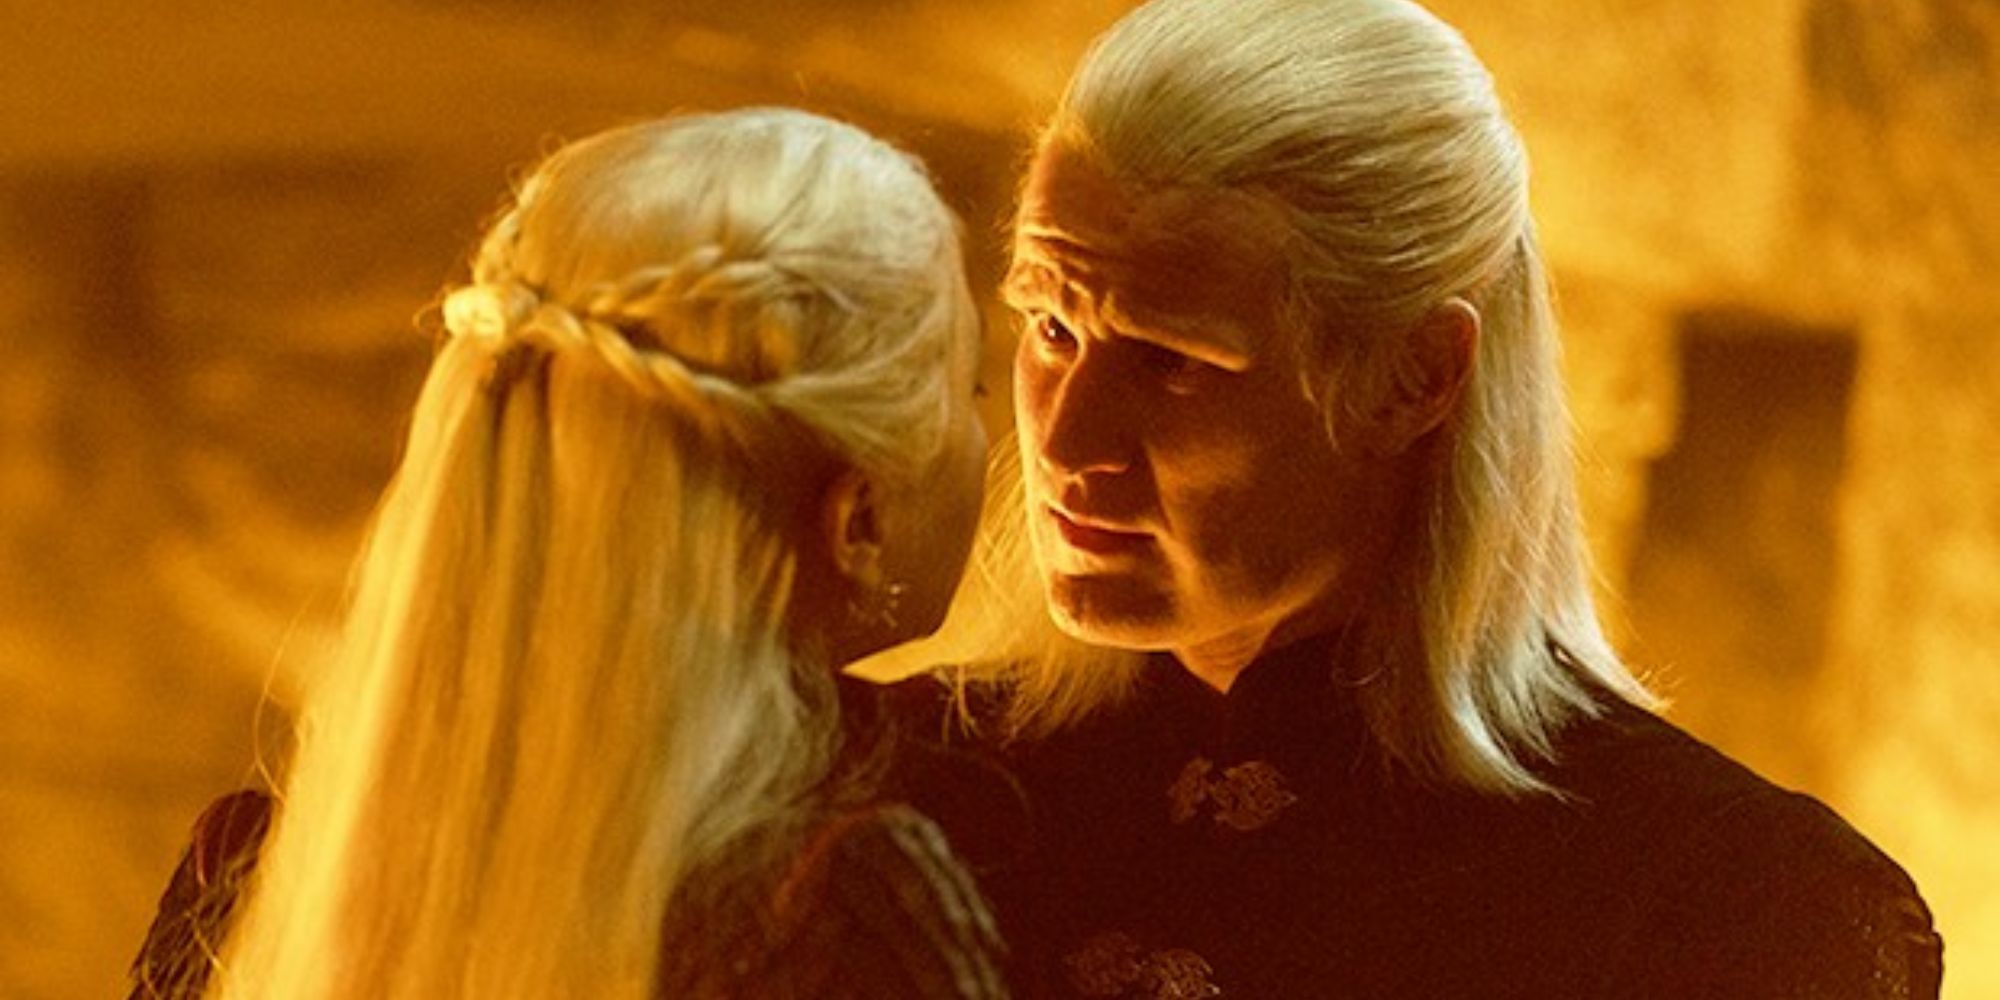 Matt Smith, dans le rôle de Daemon Targaryen, parle à Rhaenyra Targaryen, jouée par Emma D'Arcy, dans la finale de House of the Dragon.